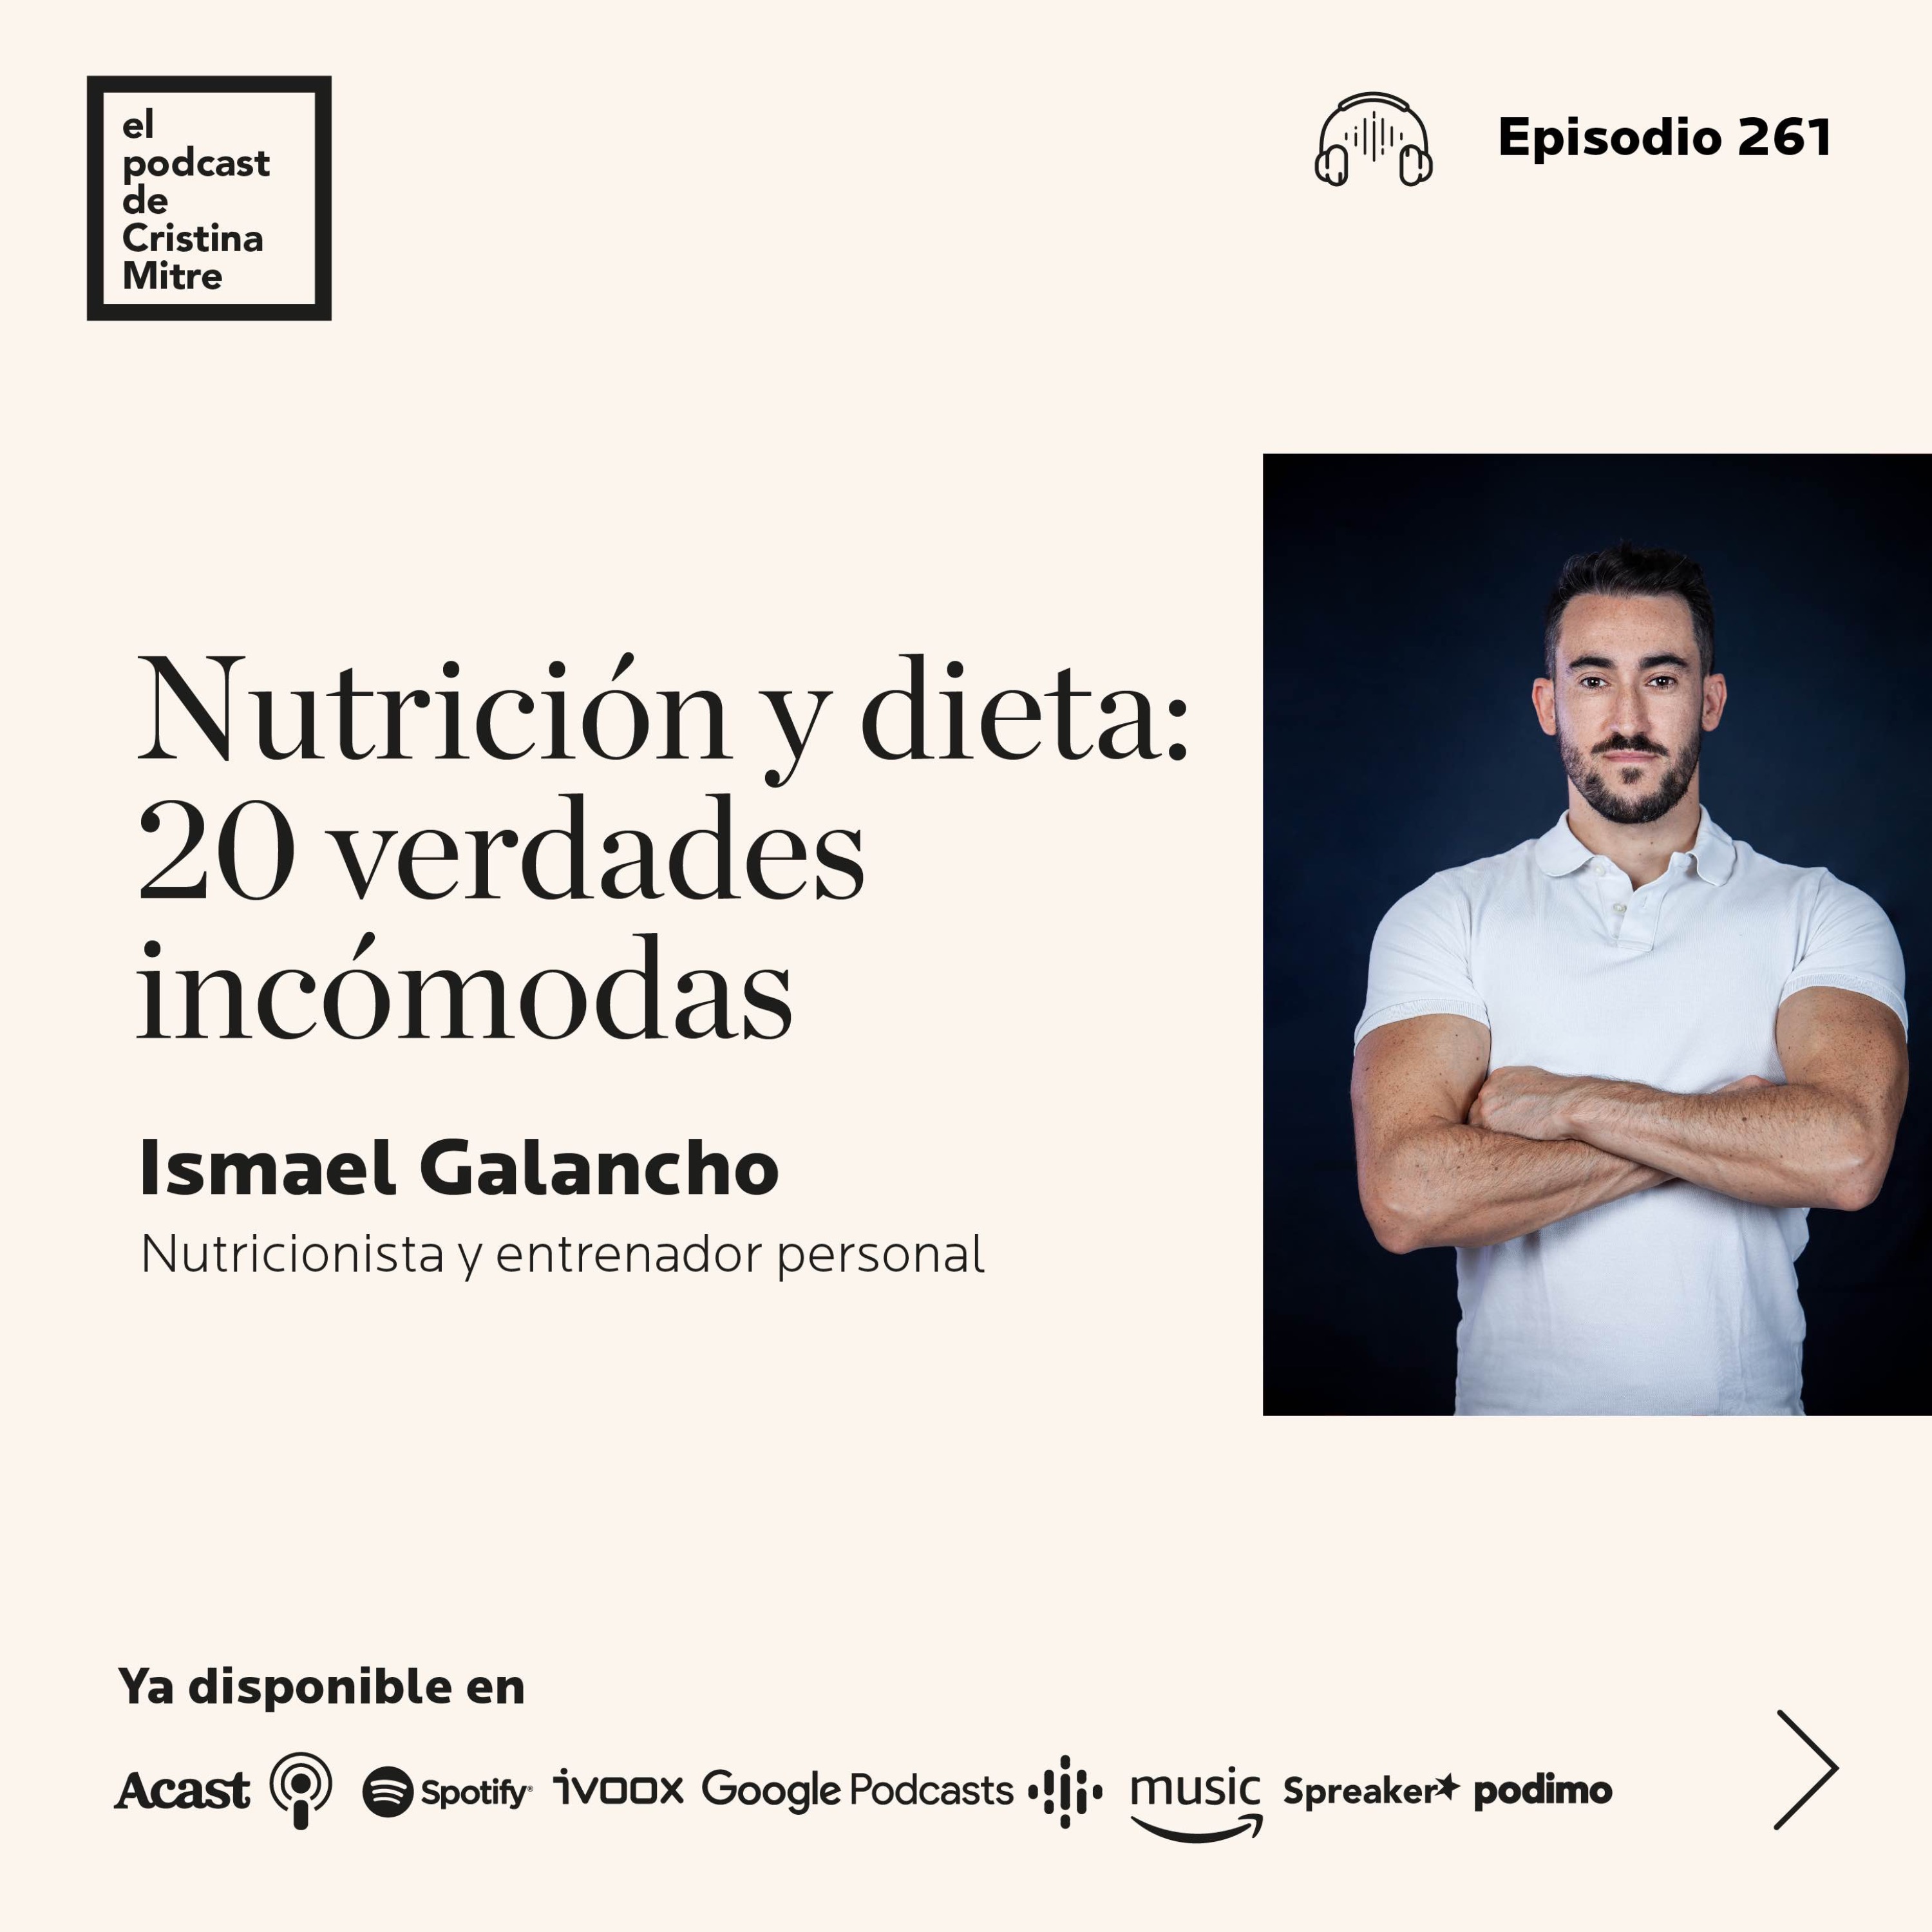 Nutrición y dieta: 20 verdades incómodas, con Ismael Galancho. Episodio 261